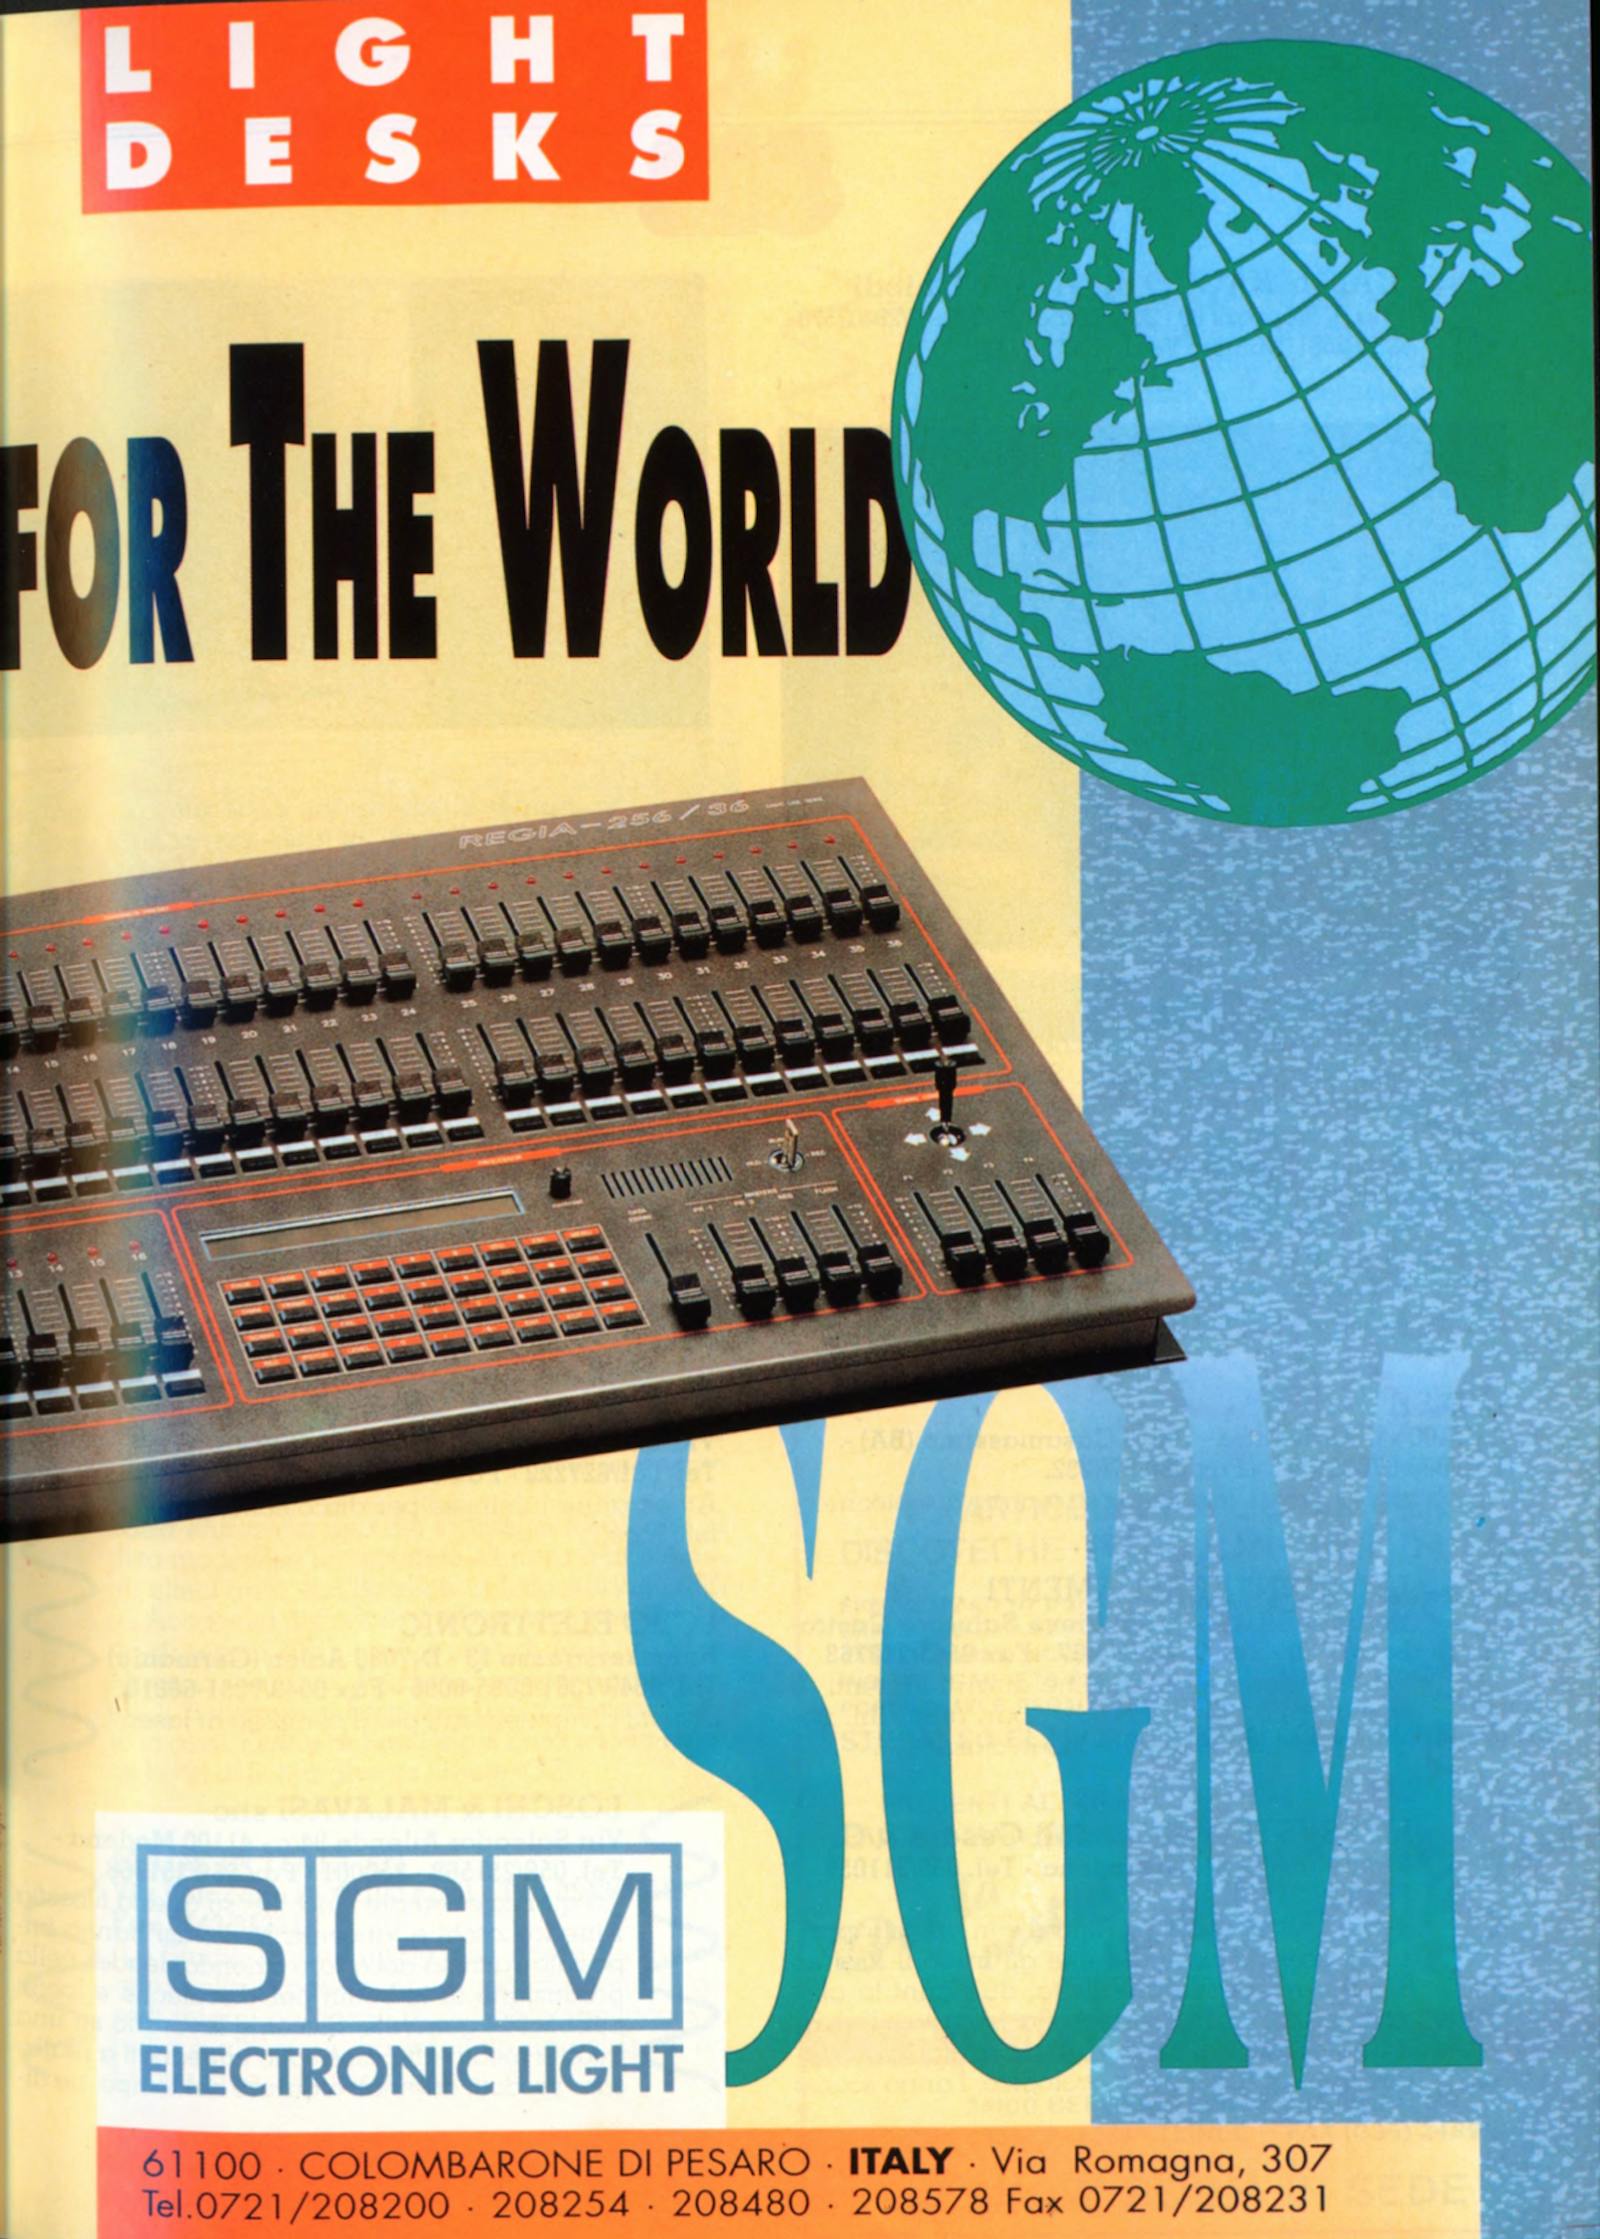 Pubblicità SGM: Light Desks for the world